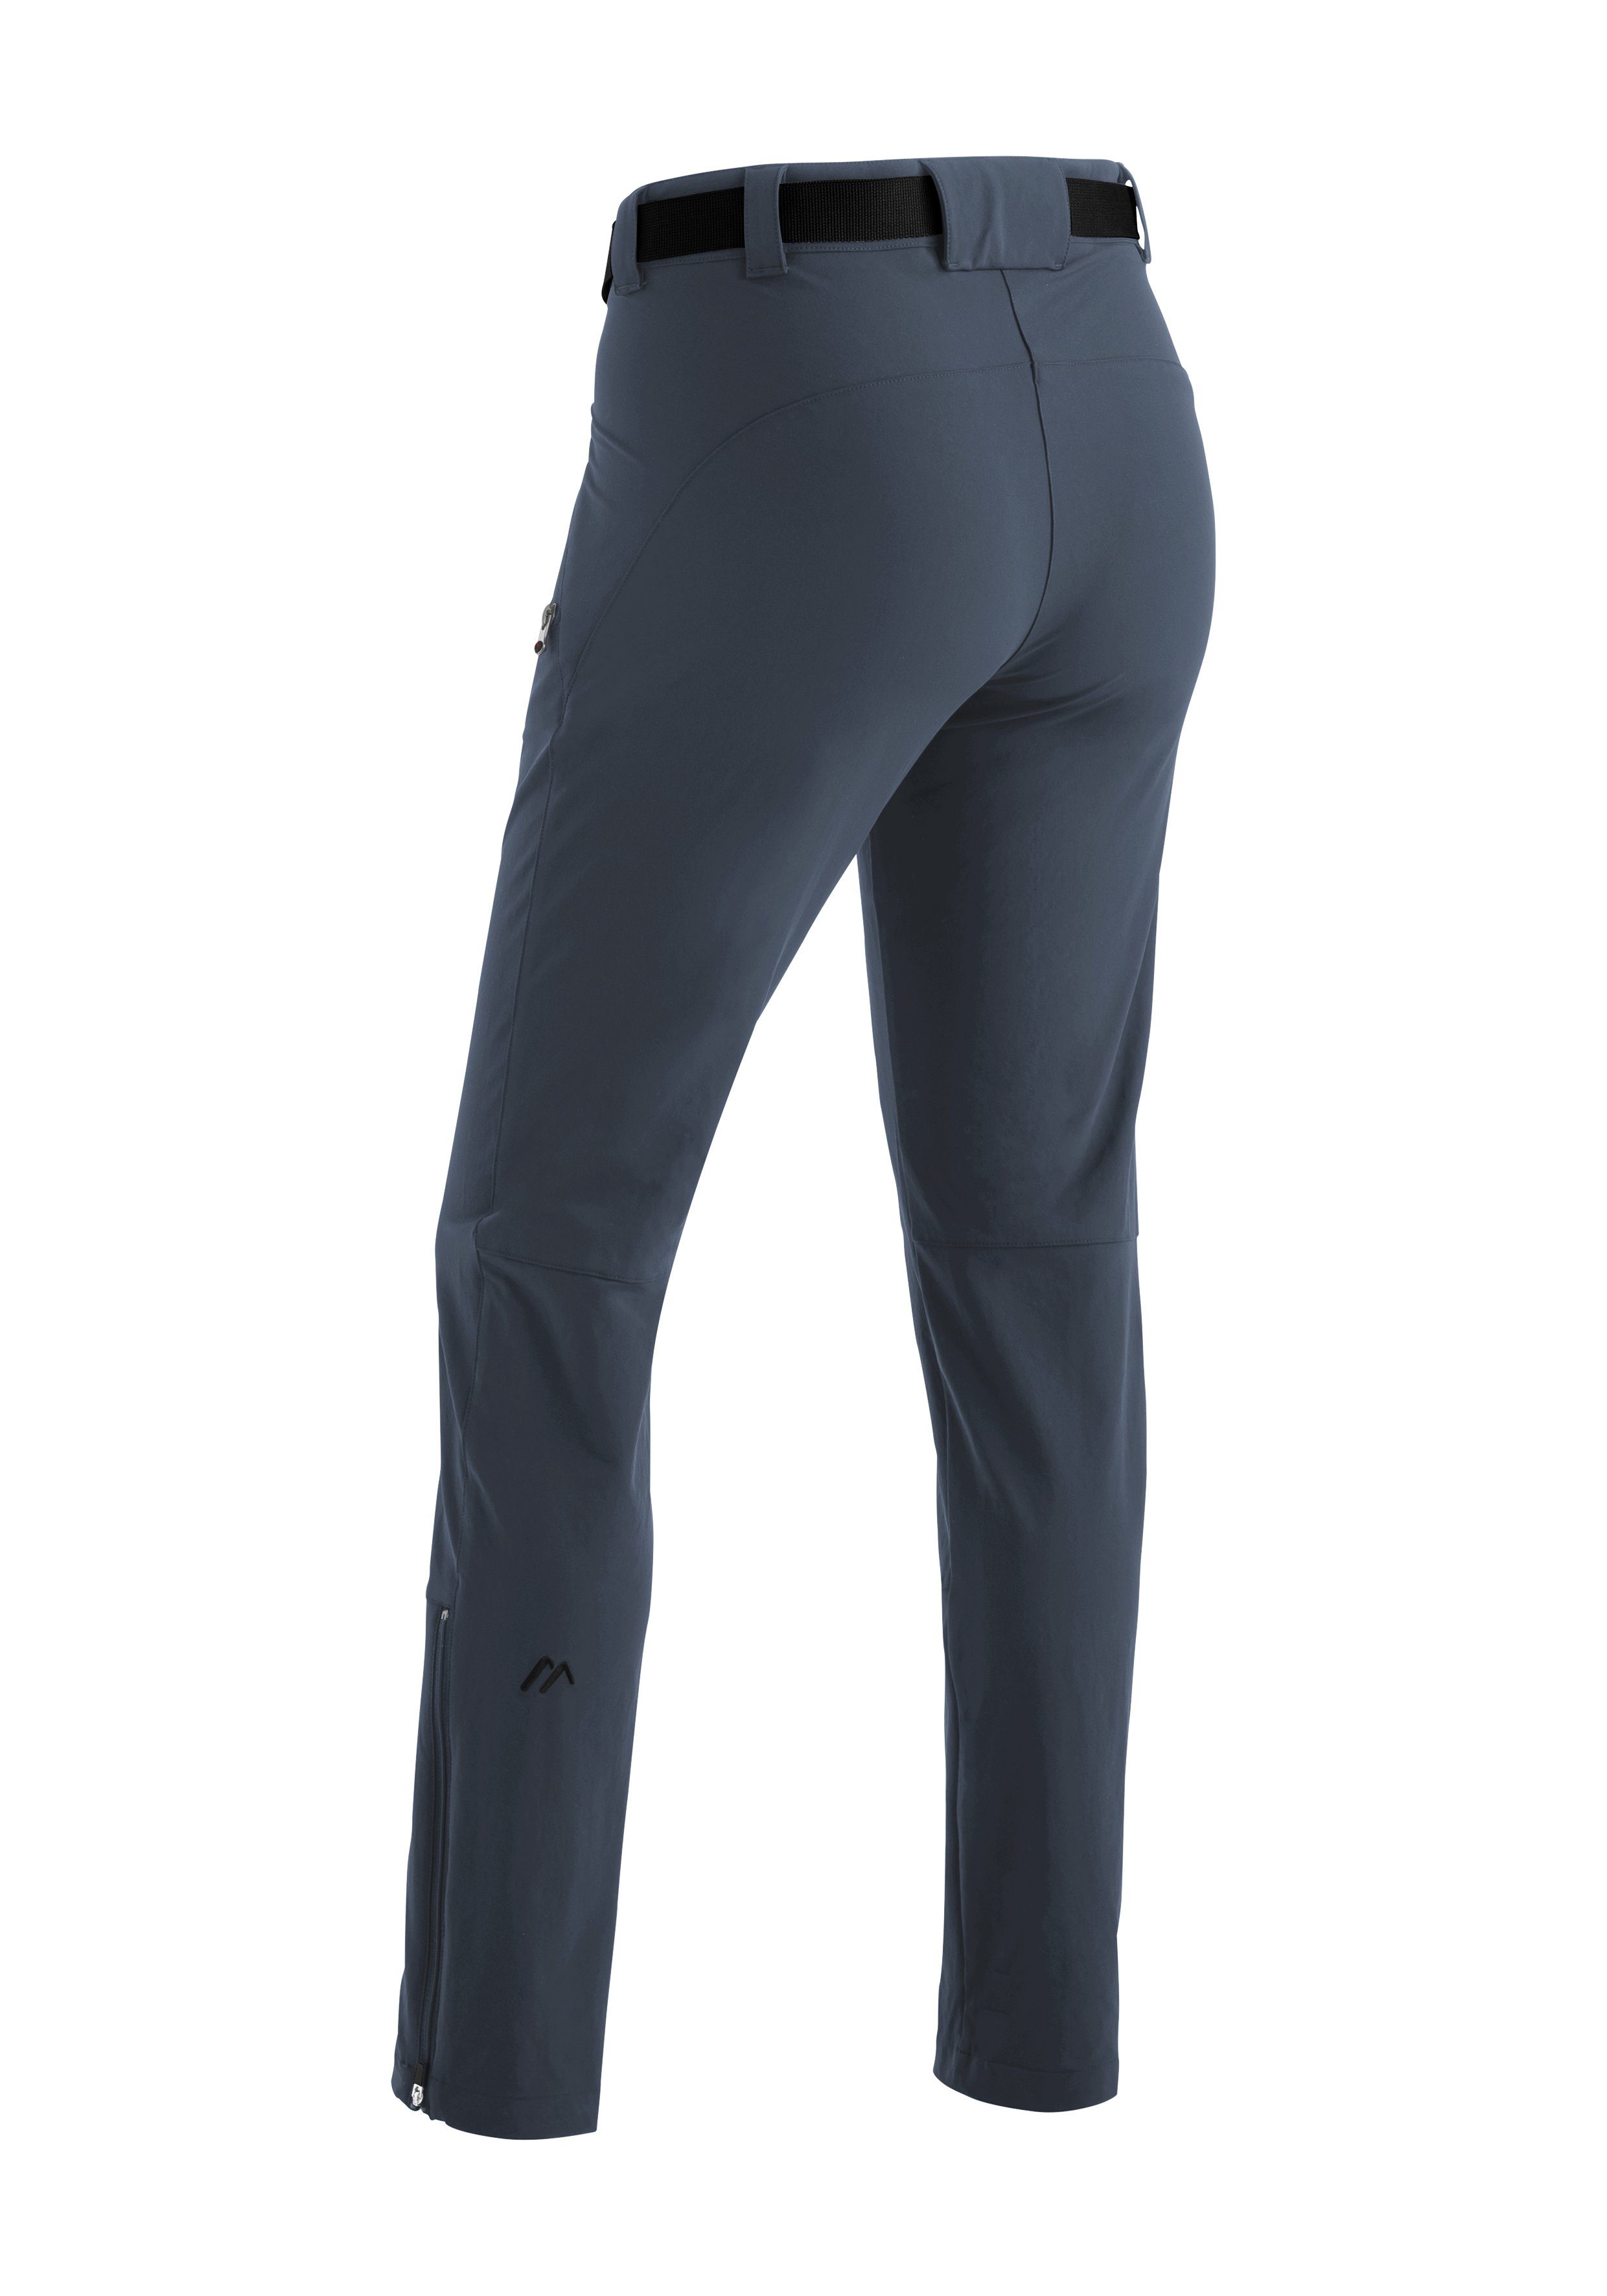 Maier Sports schnelltrocknend Trekkinghose, Lana Slimfit, slim elastisch, Funktionshose graublau